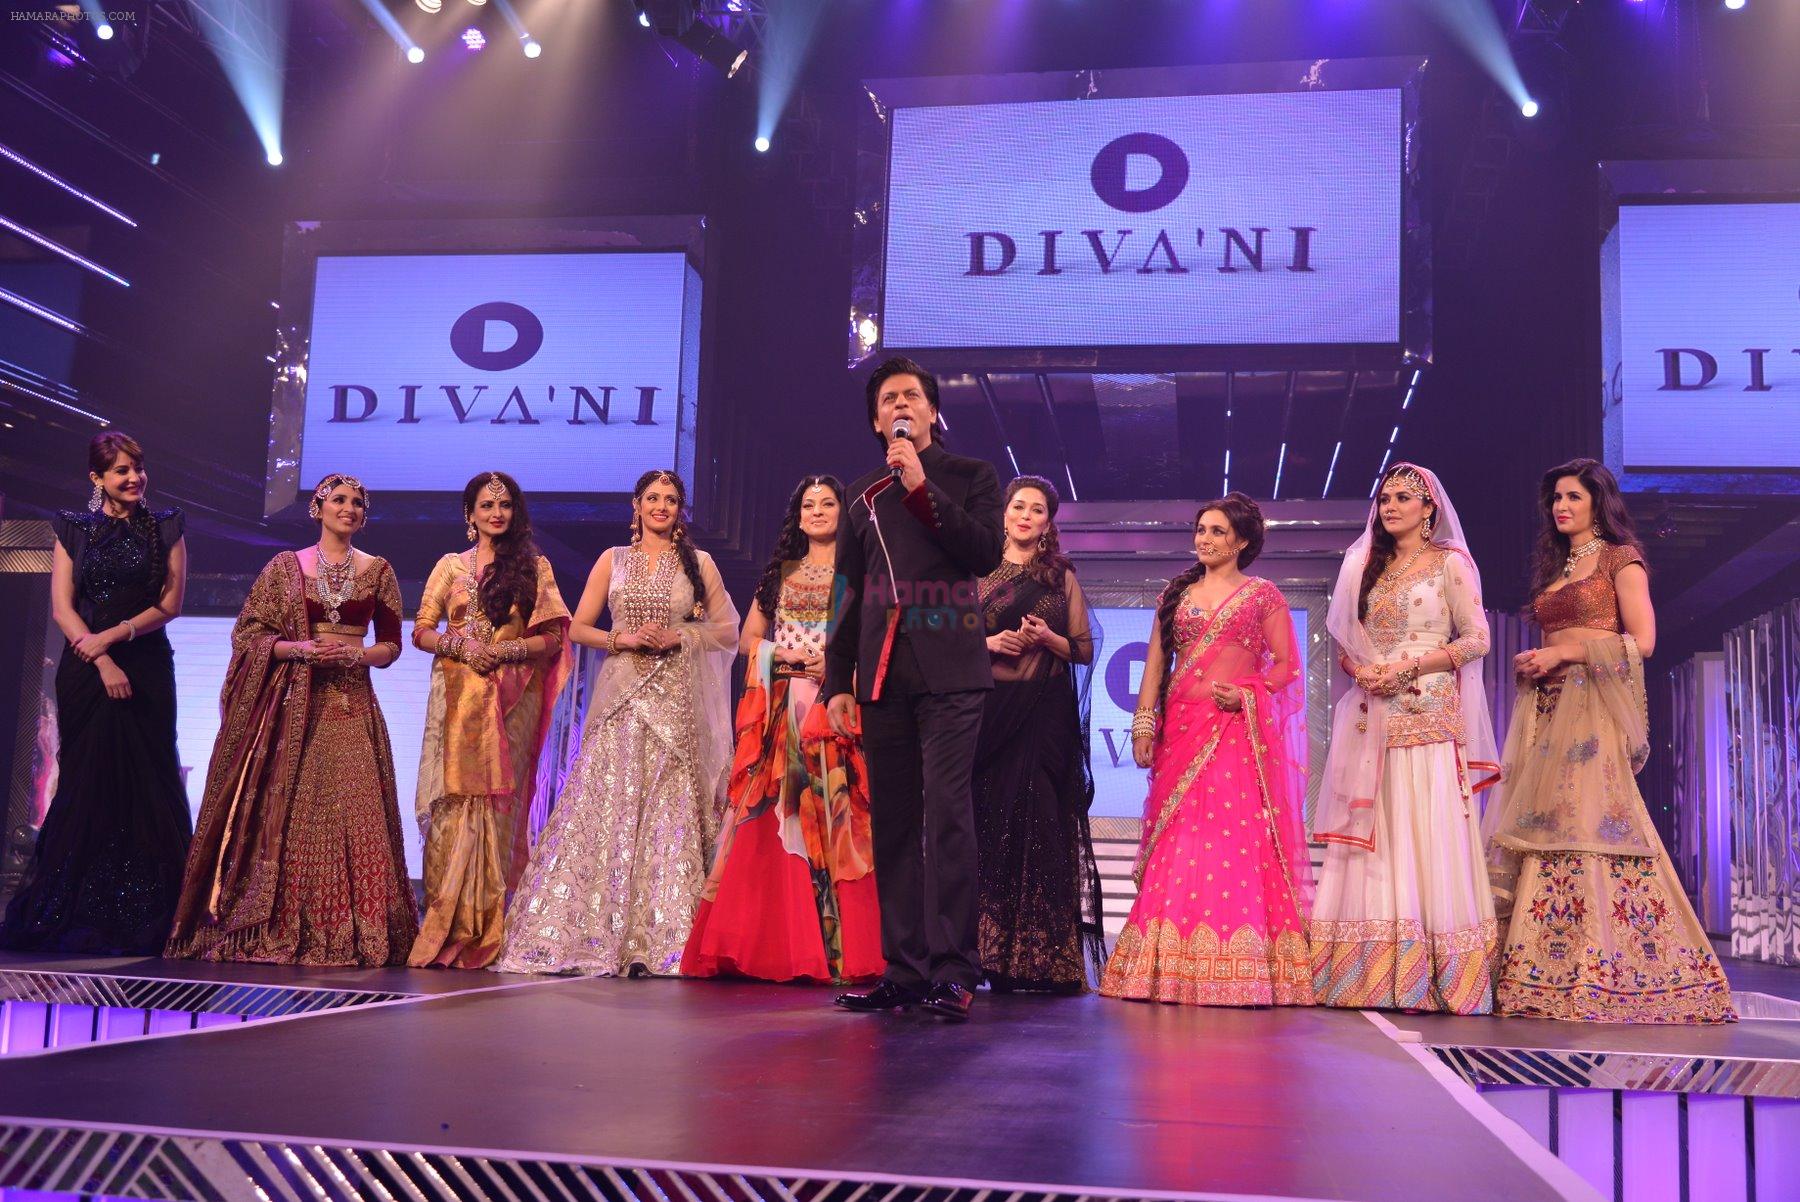 Anushka Sharma, Parineeti Chopra, Rekha, Sridevi, Juhi Chawla, Shahrukh Khan, Madhuri Dixit, Rani Mukerji, Preity Zinta, Katrina Kaif at the launch of Diva_ni in Mumbai on 27th Sept 20